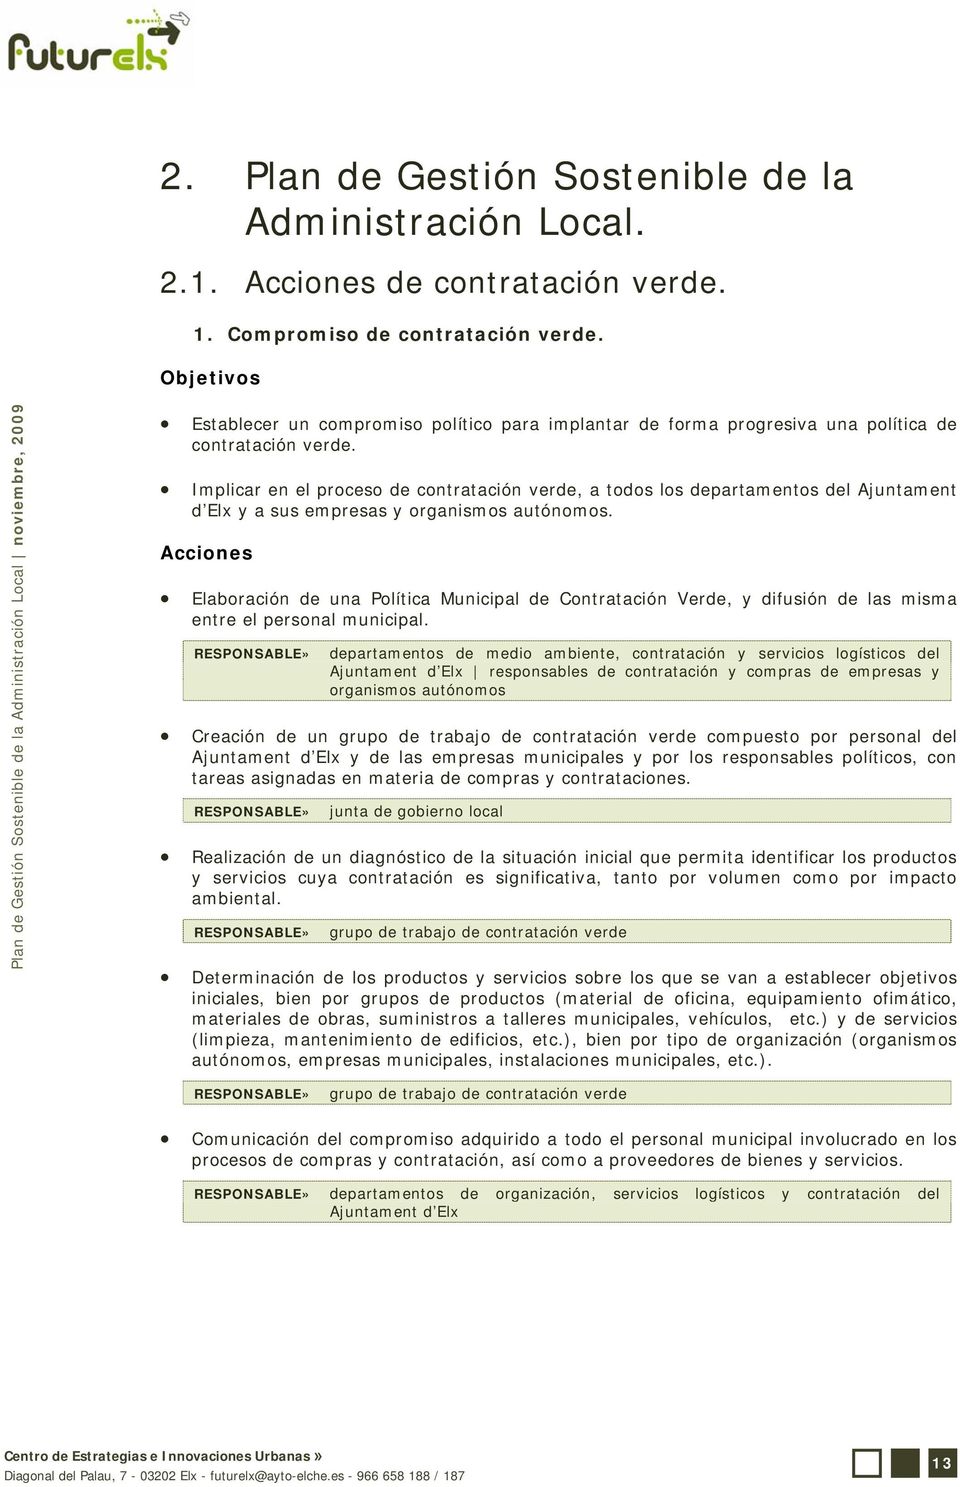 Implicar en el proceso de contratación verde, a todos los departamentos del Ajuntament d Elx y a sus empresas y organismos autónomos.